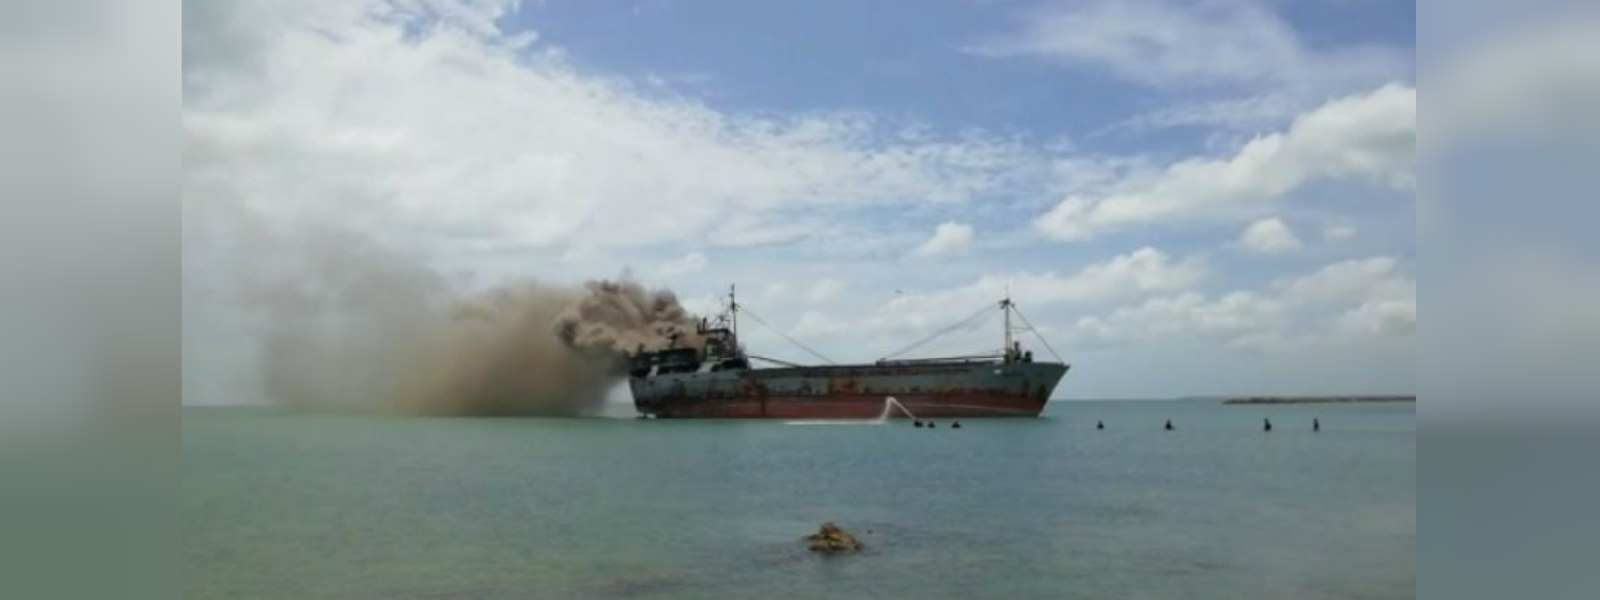 Fire on abandoned ship off Jaffna coast